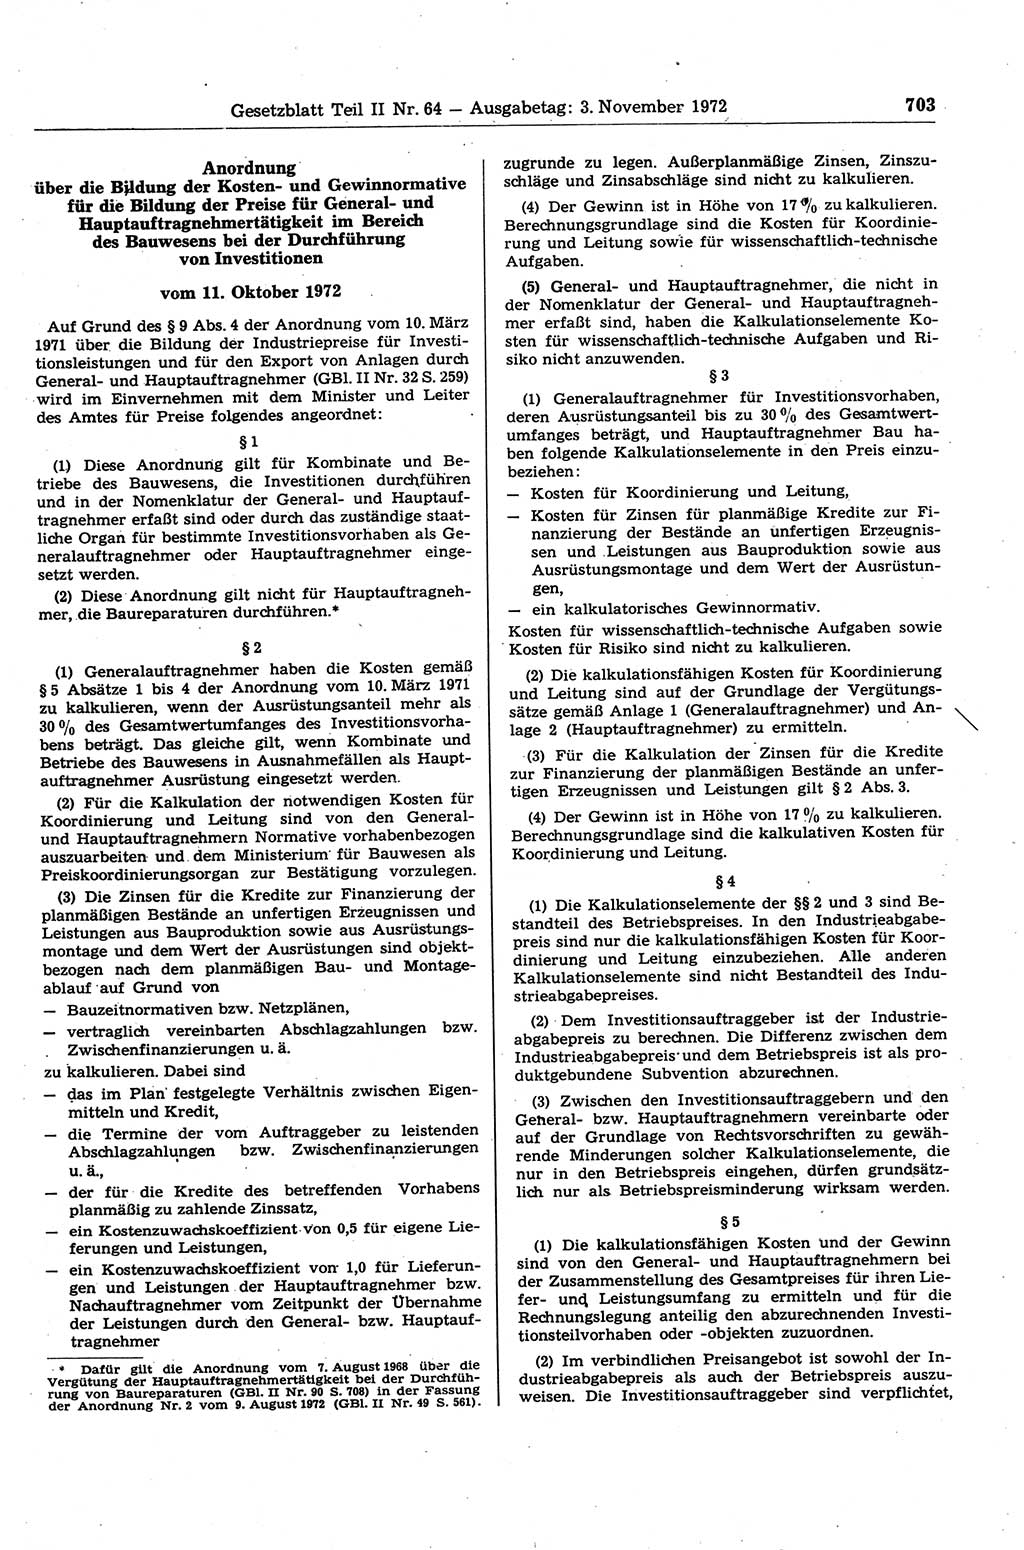 Gesetzblatt (GBl.) der Deutschen Demokratischen Republik (DDR) Teil ⅠⅠ 1972, Seite 703 (GBl. DDR ⅠⅠ 1972, S. 703)